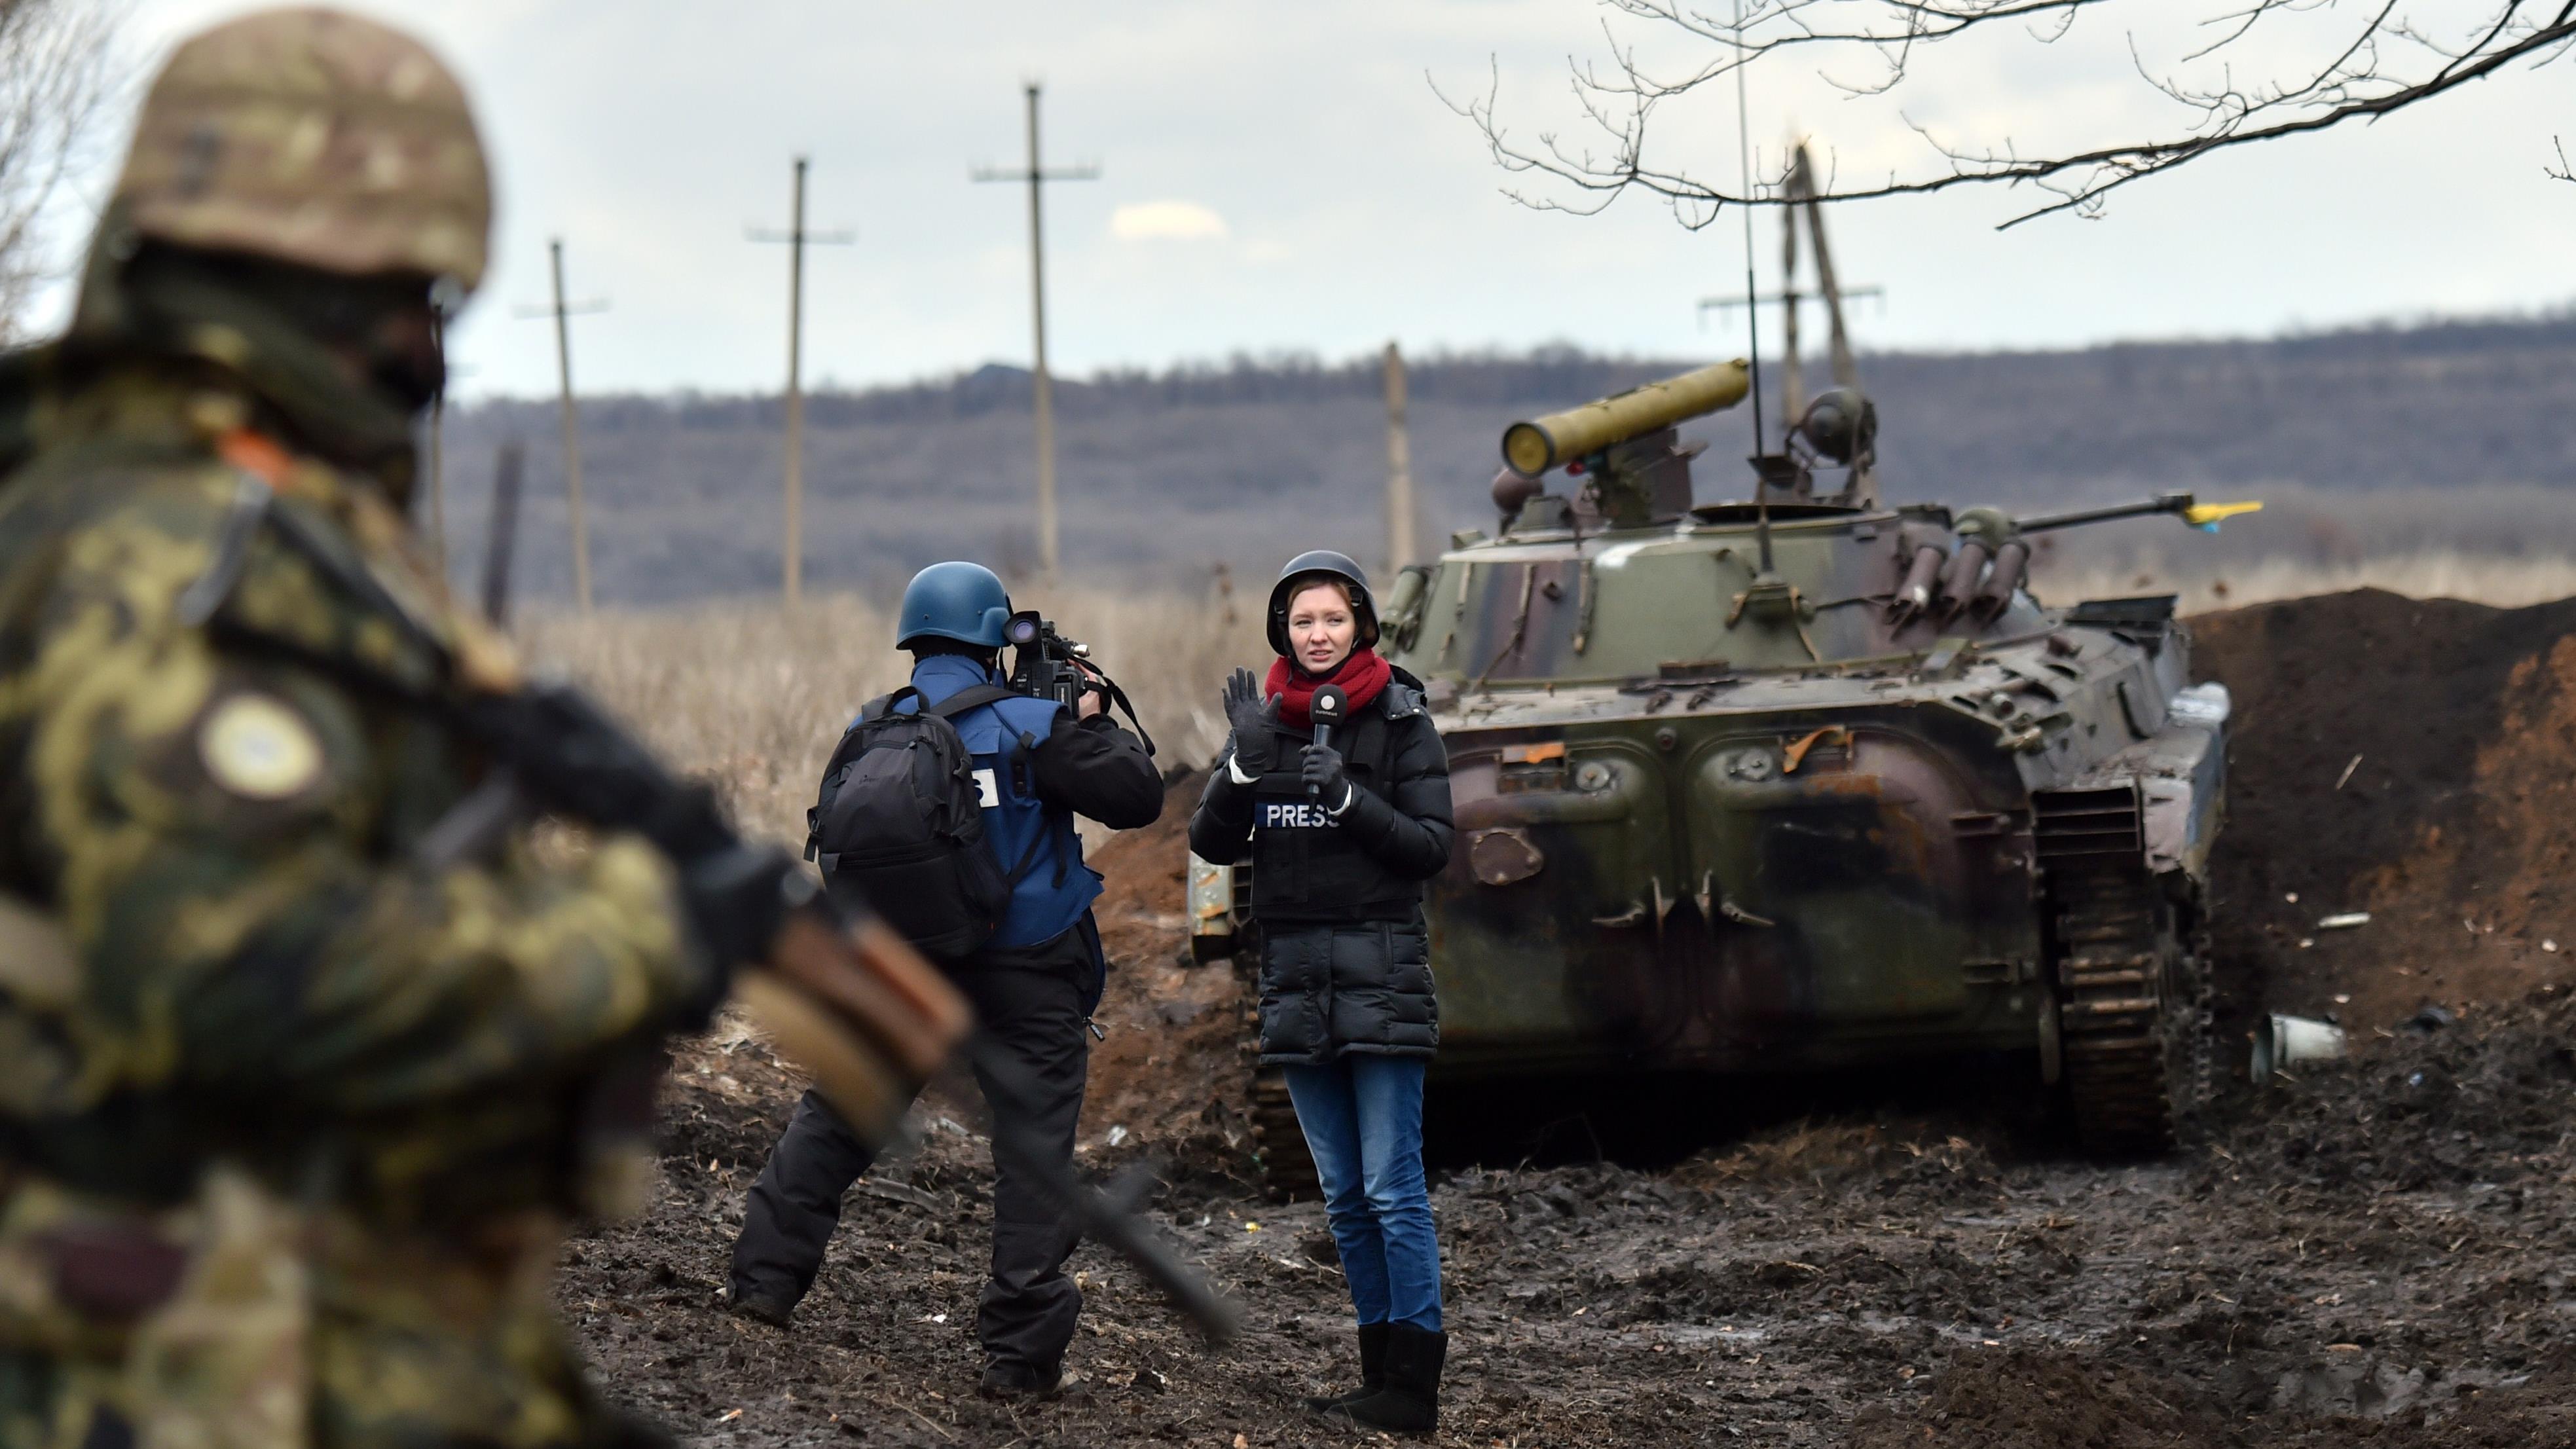 La couverture de la guerre en Ukraine
La couverture de la guerre en Ukraine